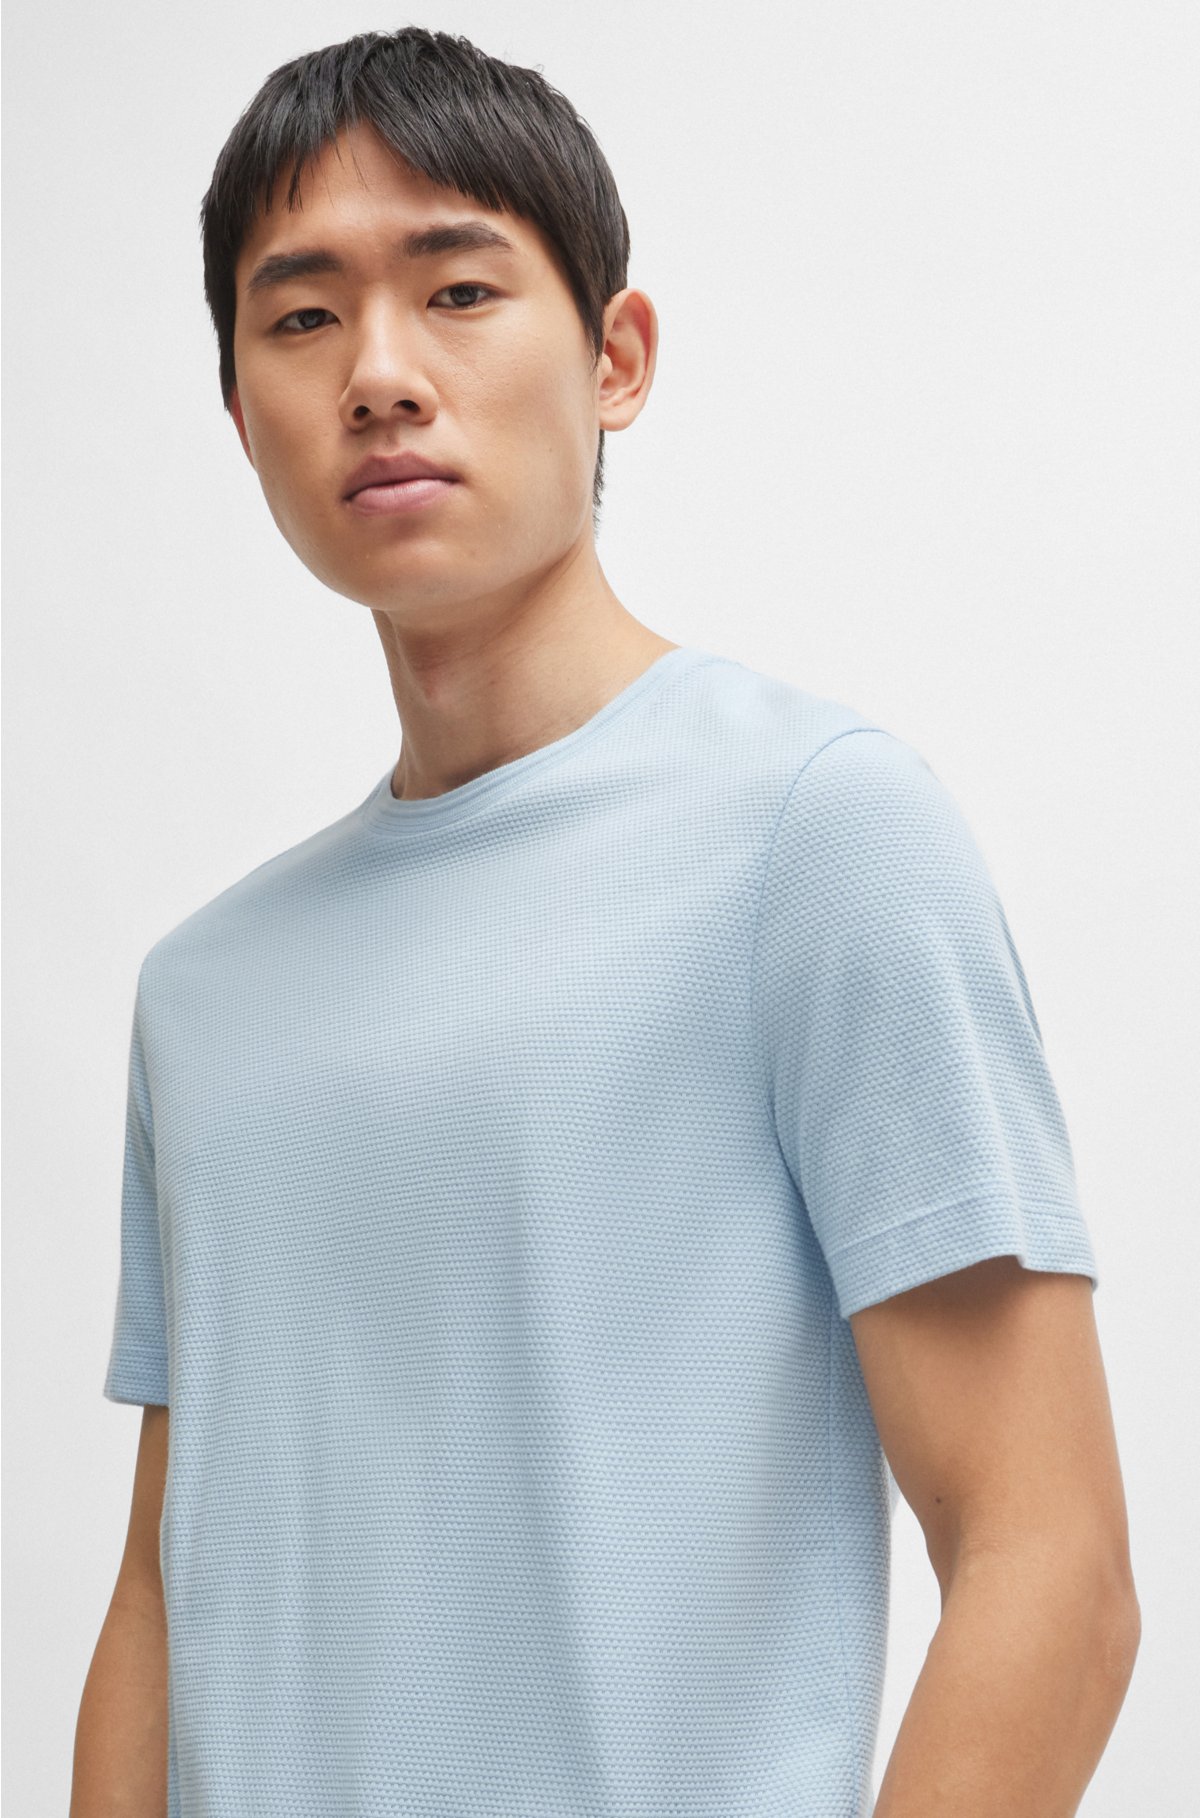 Cotton-blend T-shirt with bubble-jacquard structure, Light Blue